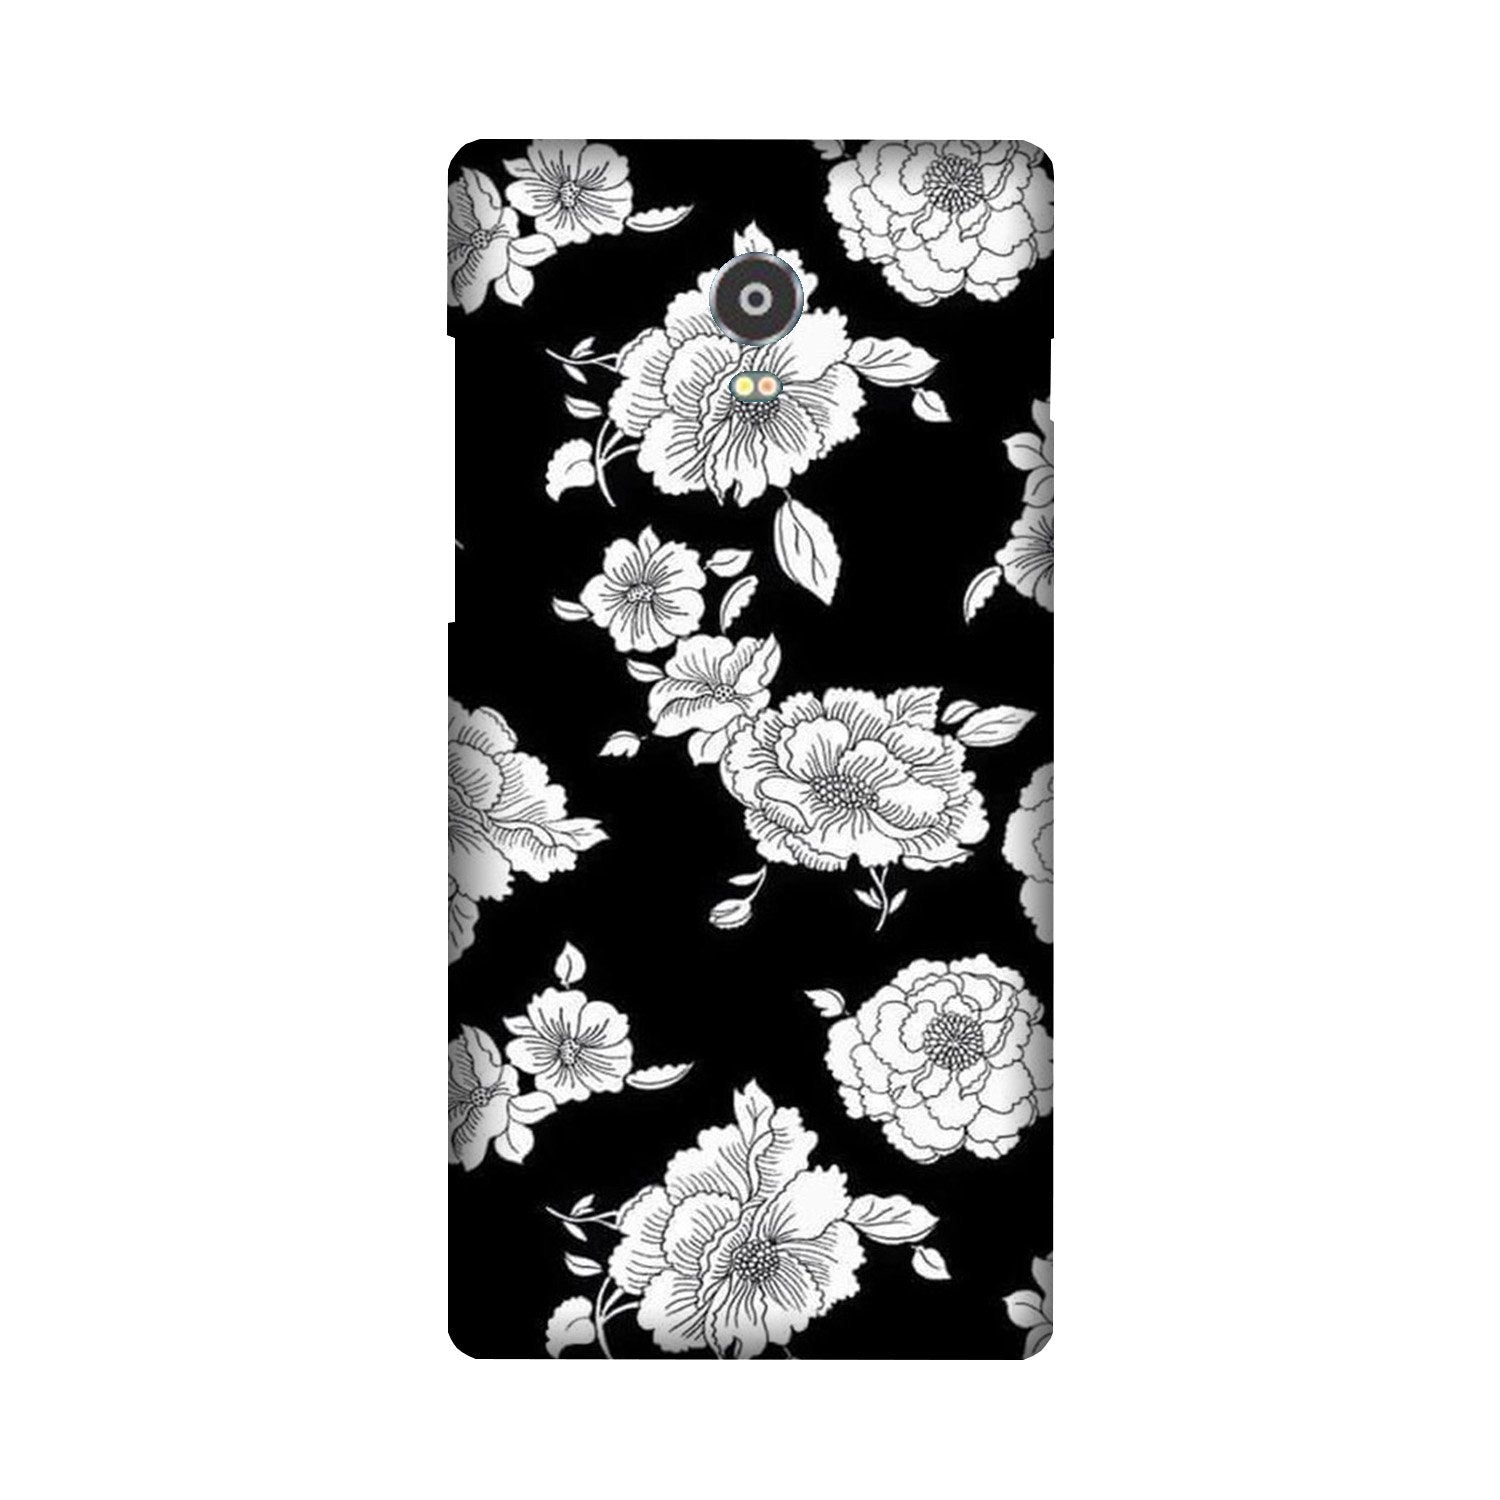 White flowers Black Background Case for Lenovo Vibe P1